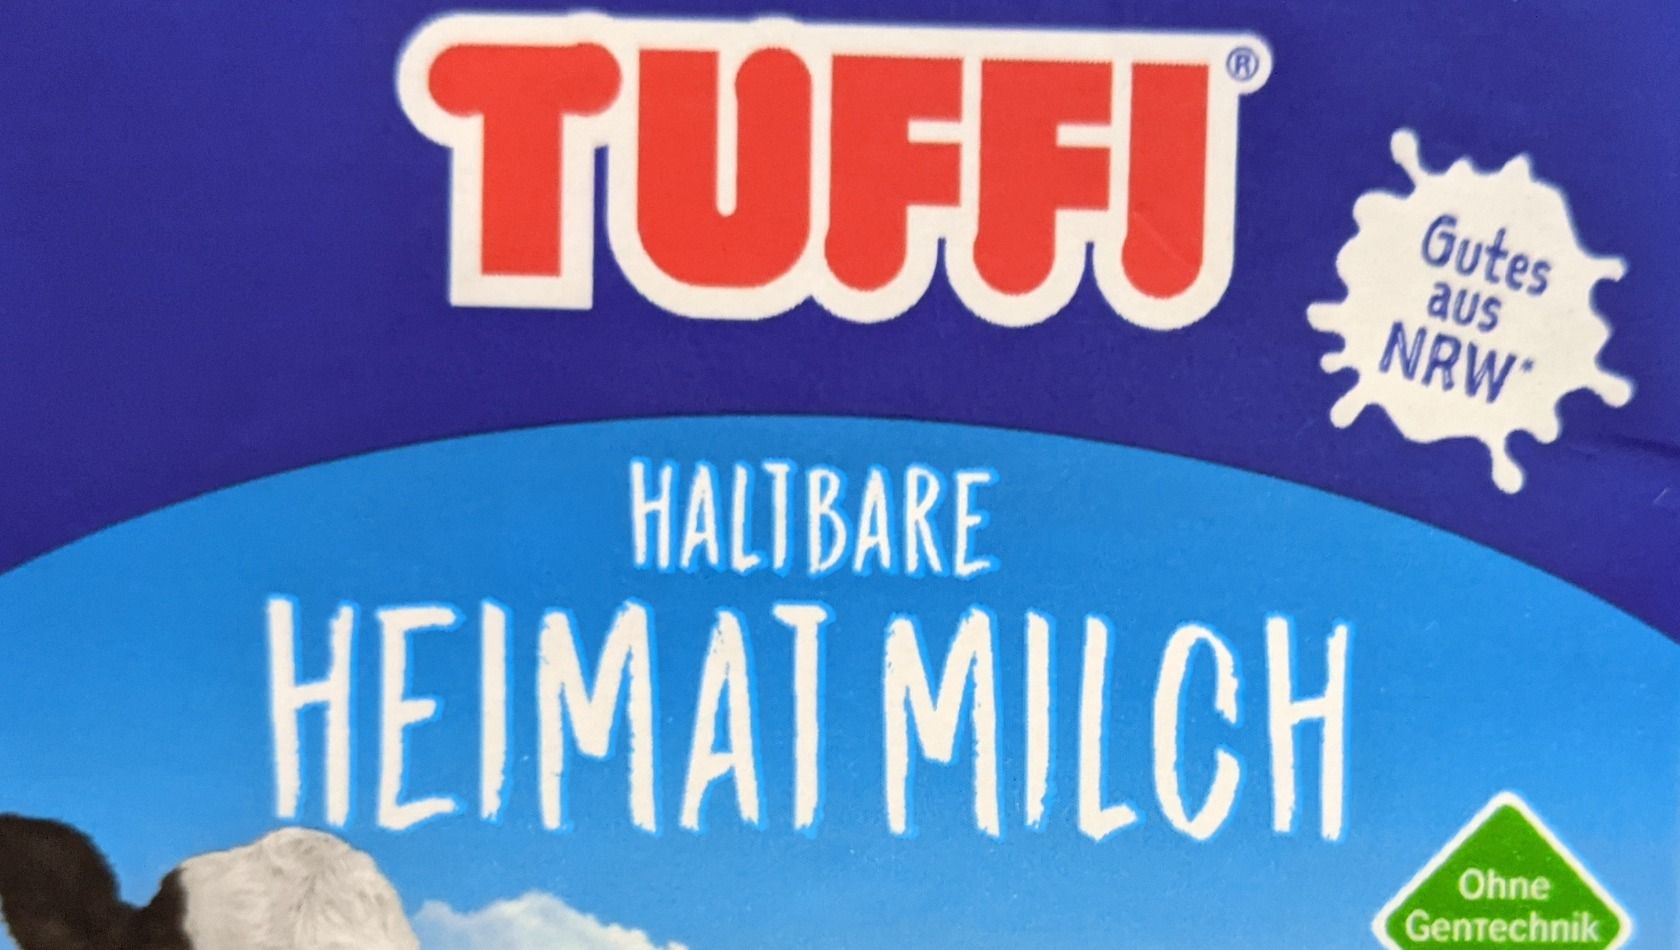 Tuffi 2 für 1 Ticket Milch Freizeitpark-Gutschein